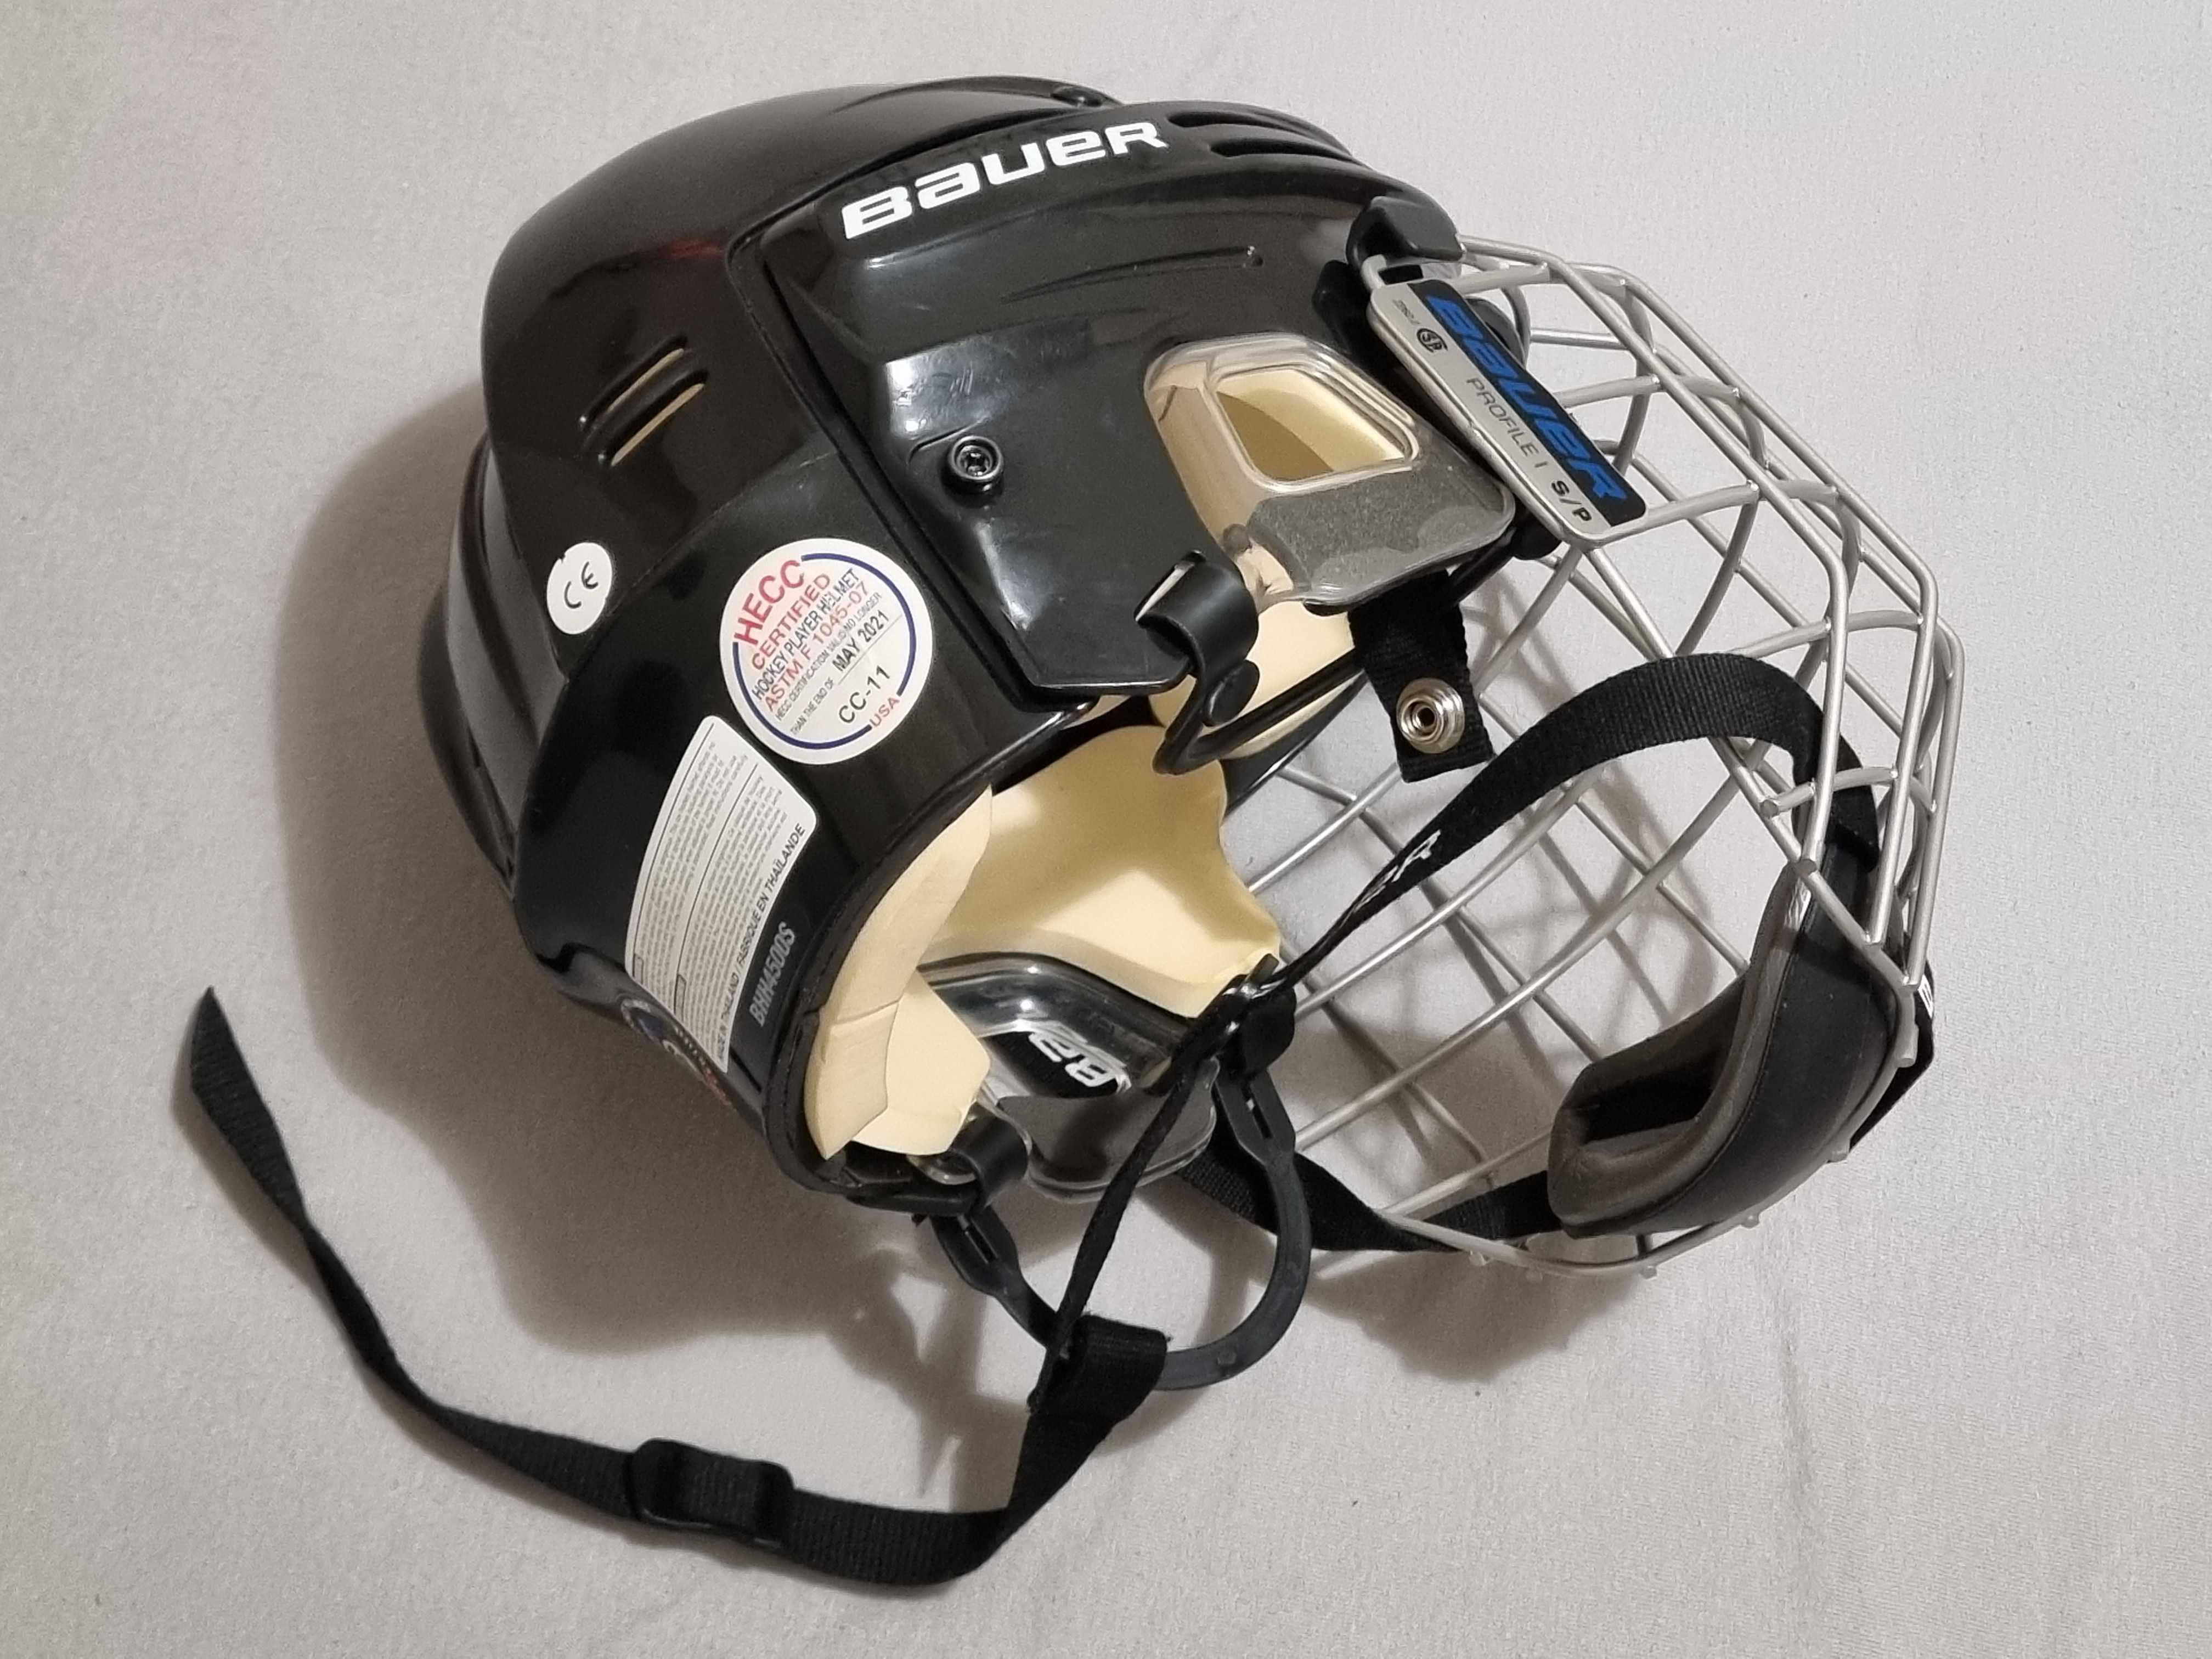 Kask hokejowy Bauer 4500 (rozm. S) z kratownicą Bauer Profile I FM